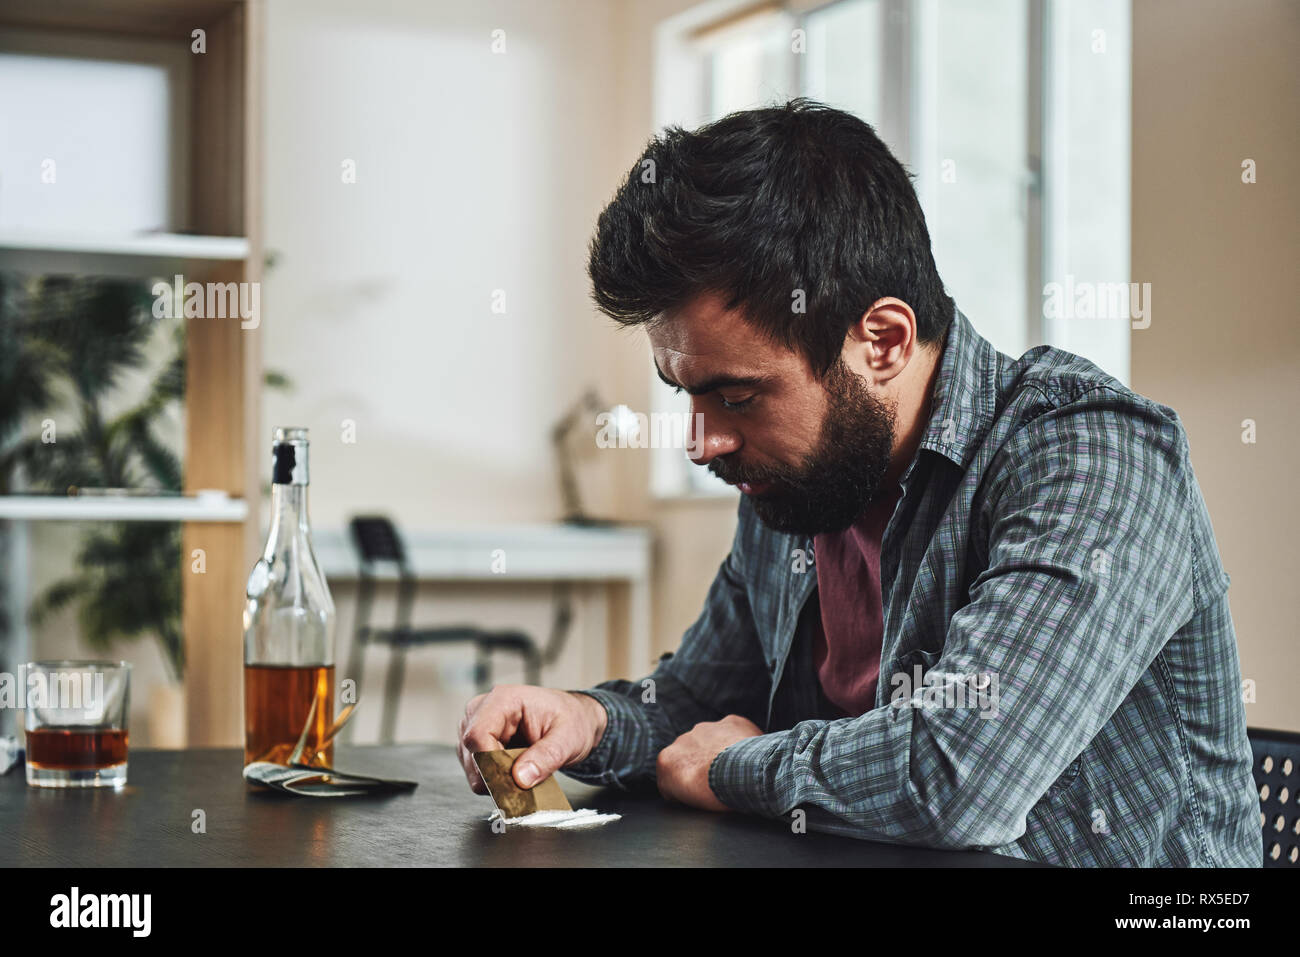 Premuto barbuto uomo si siede a tavola si prepara a snort una linea di cocaina tramite banca nota. Egli soffre di problemi sul lavoro e difficoltà in r Foto Stock